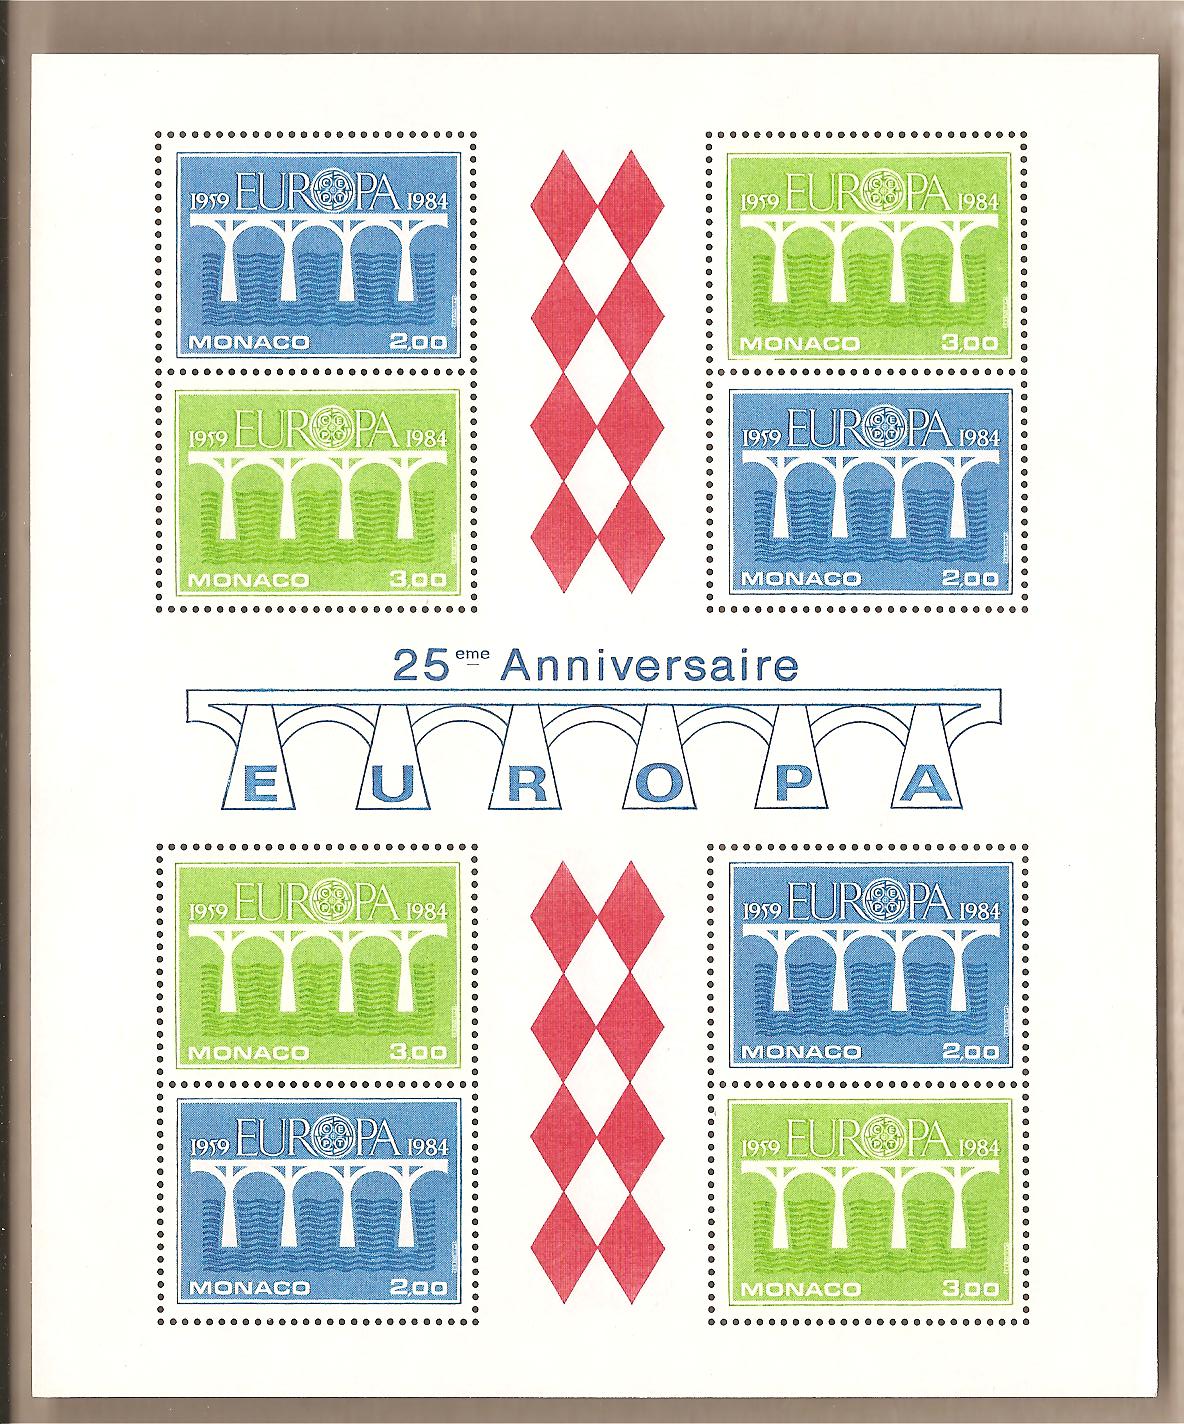 41460 - Monaco - foglietti nuovo Europa 1984